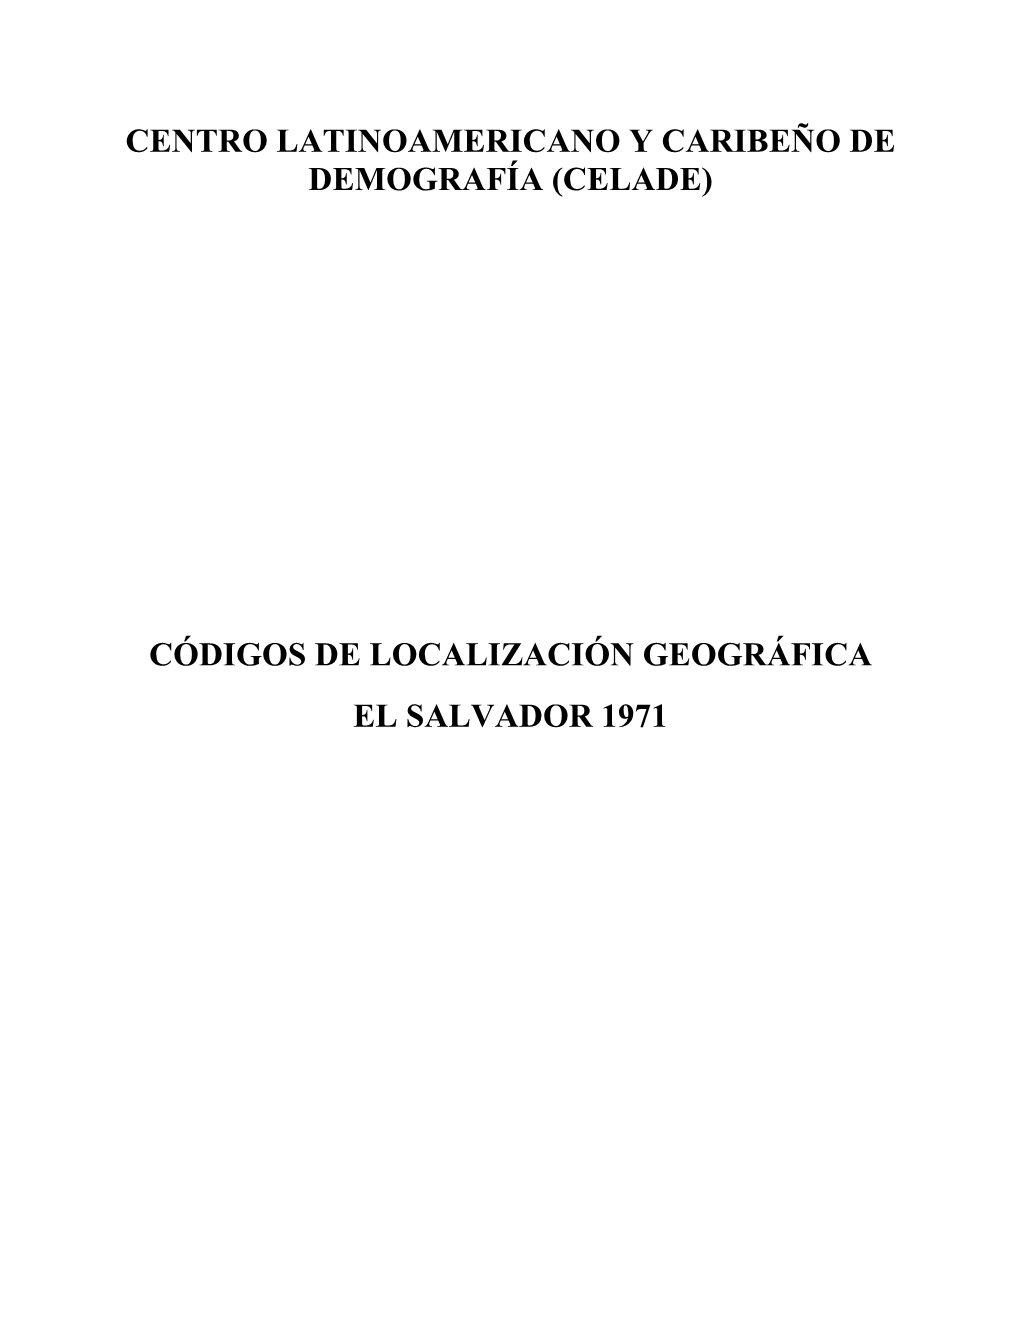 (Celade) Códigos De Localización Geográfica El Salvador 1971